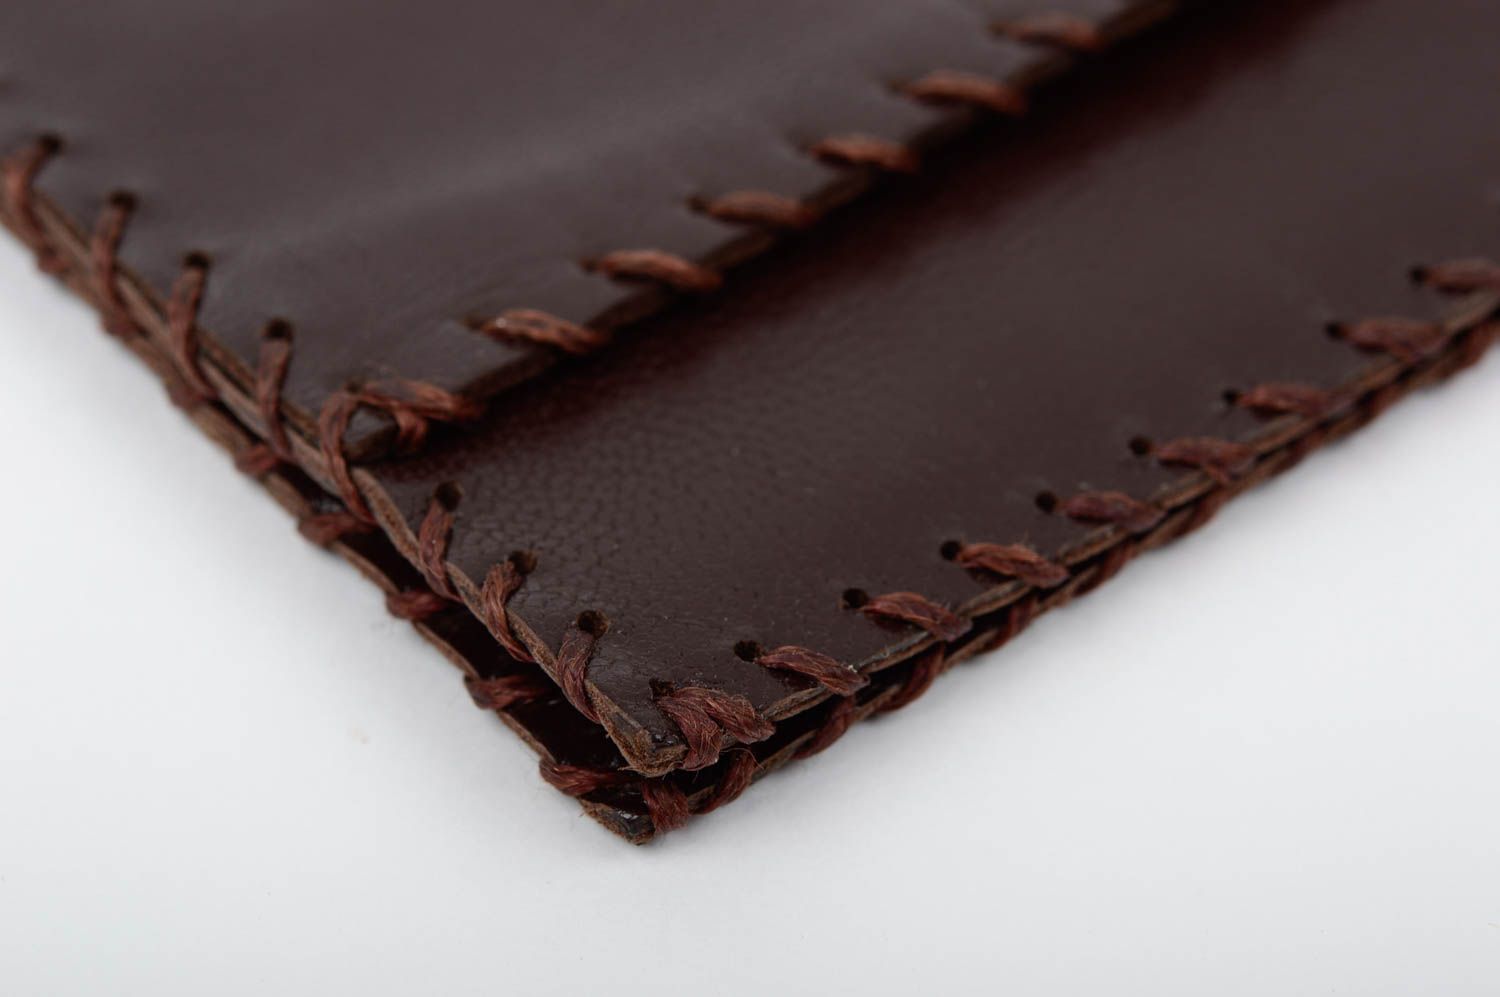 Кожаный кошелек портмоне прямоугольный коричневый красивый стильный хэнд мейд фото 4